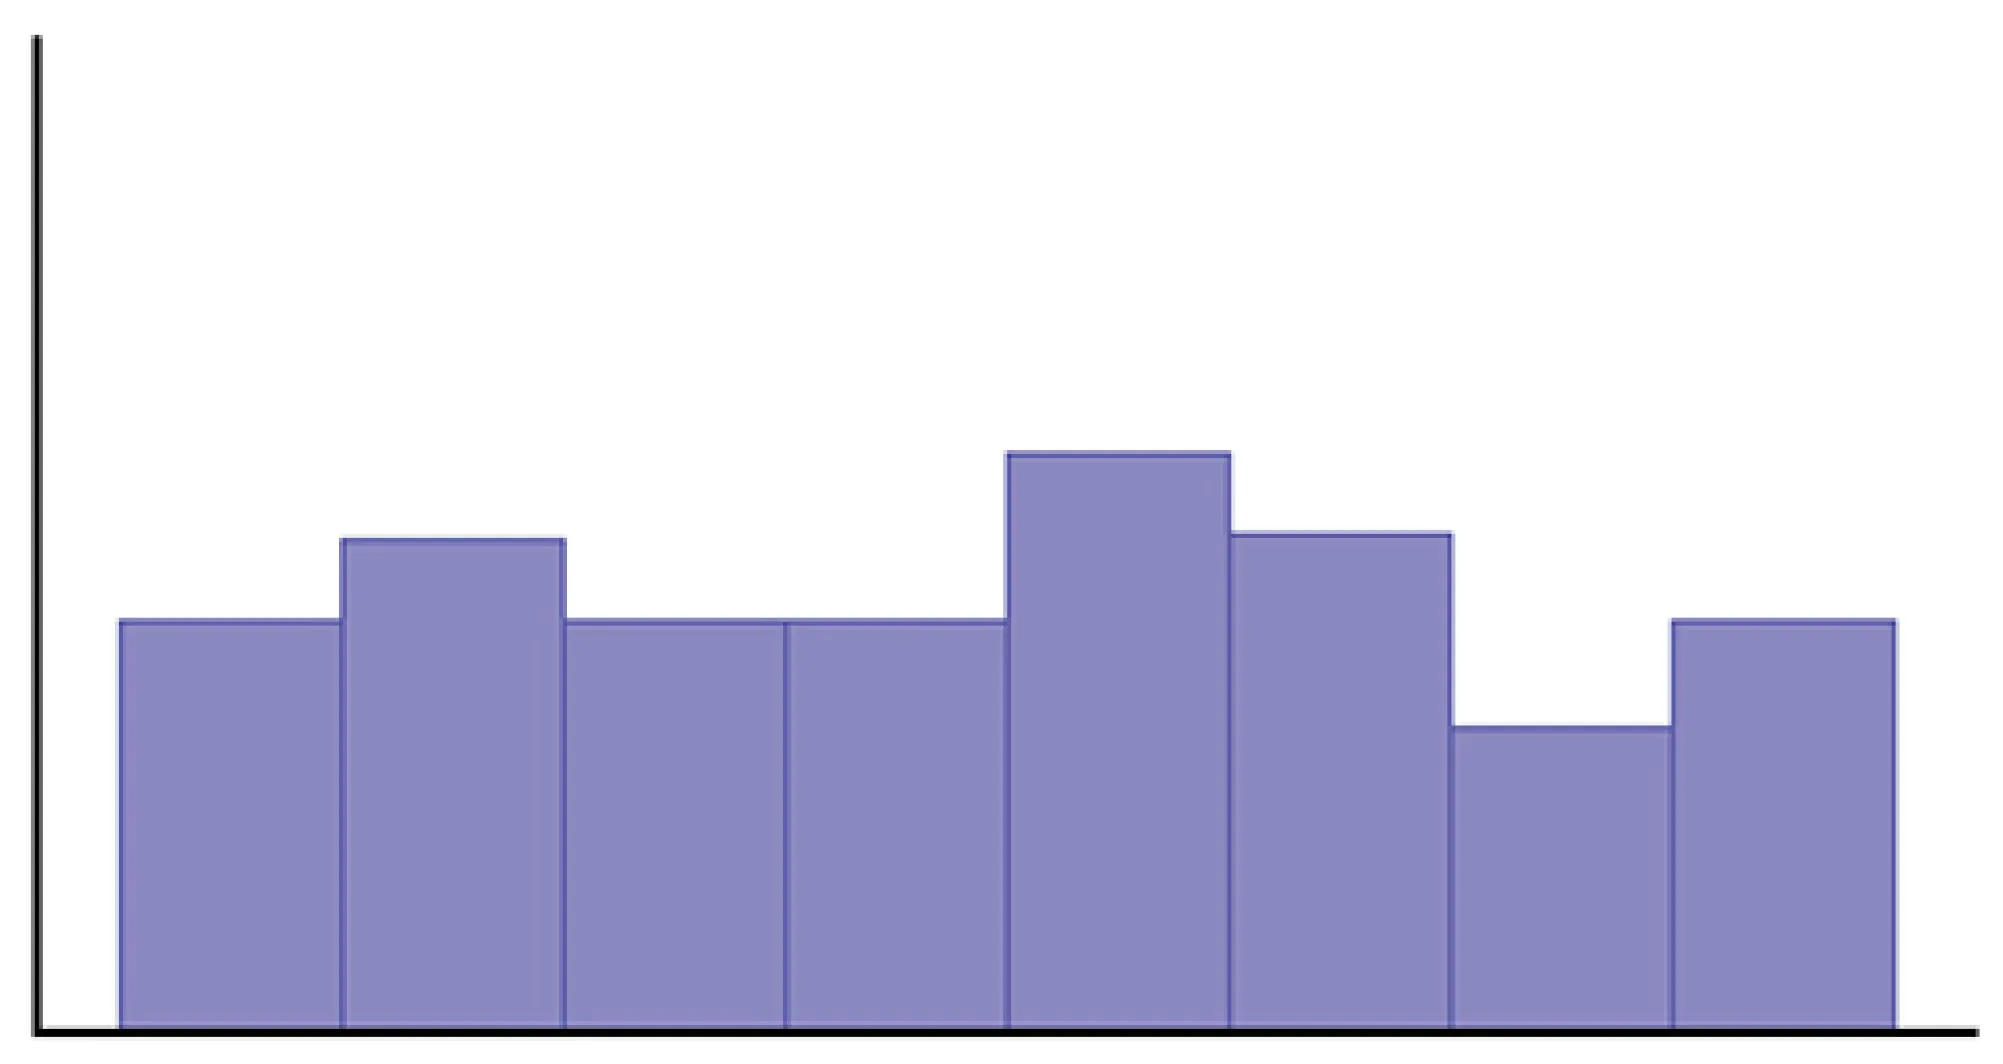 Este gráfico es un histograma sin identificar. La altura de las barras no varía mucho en la distribución.